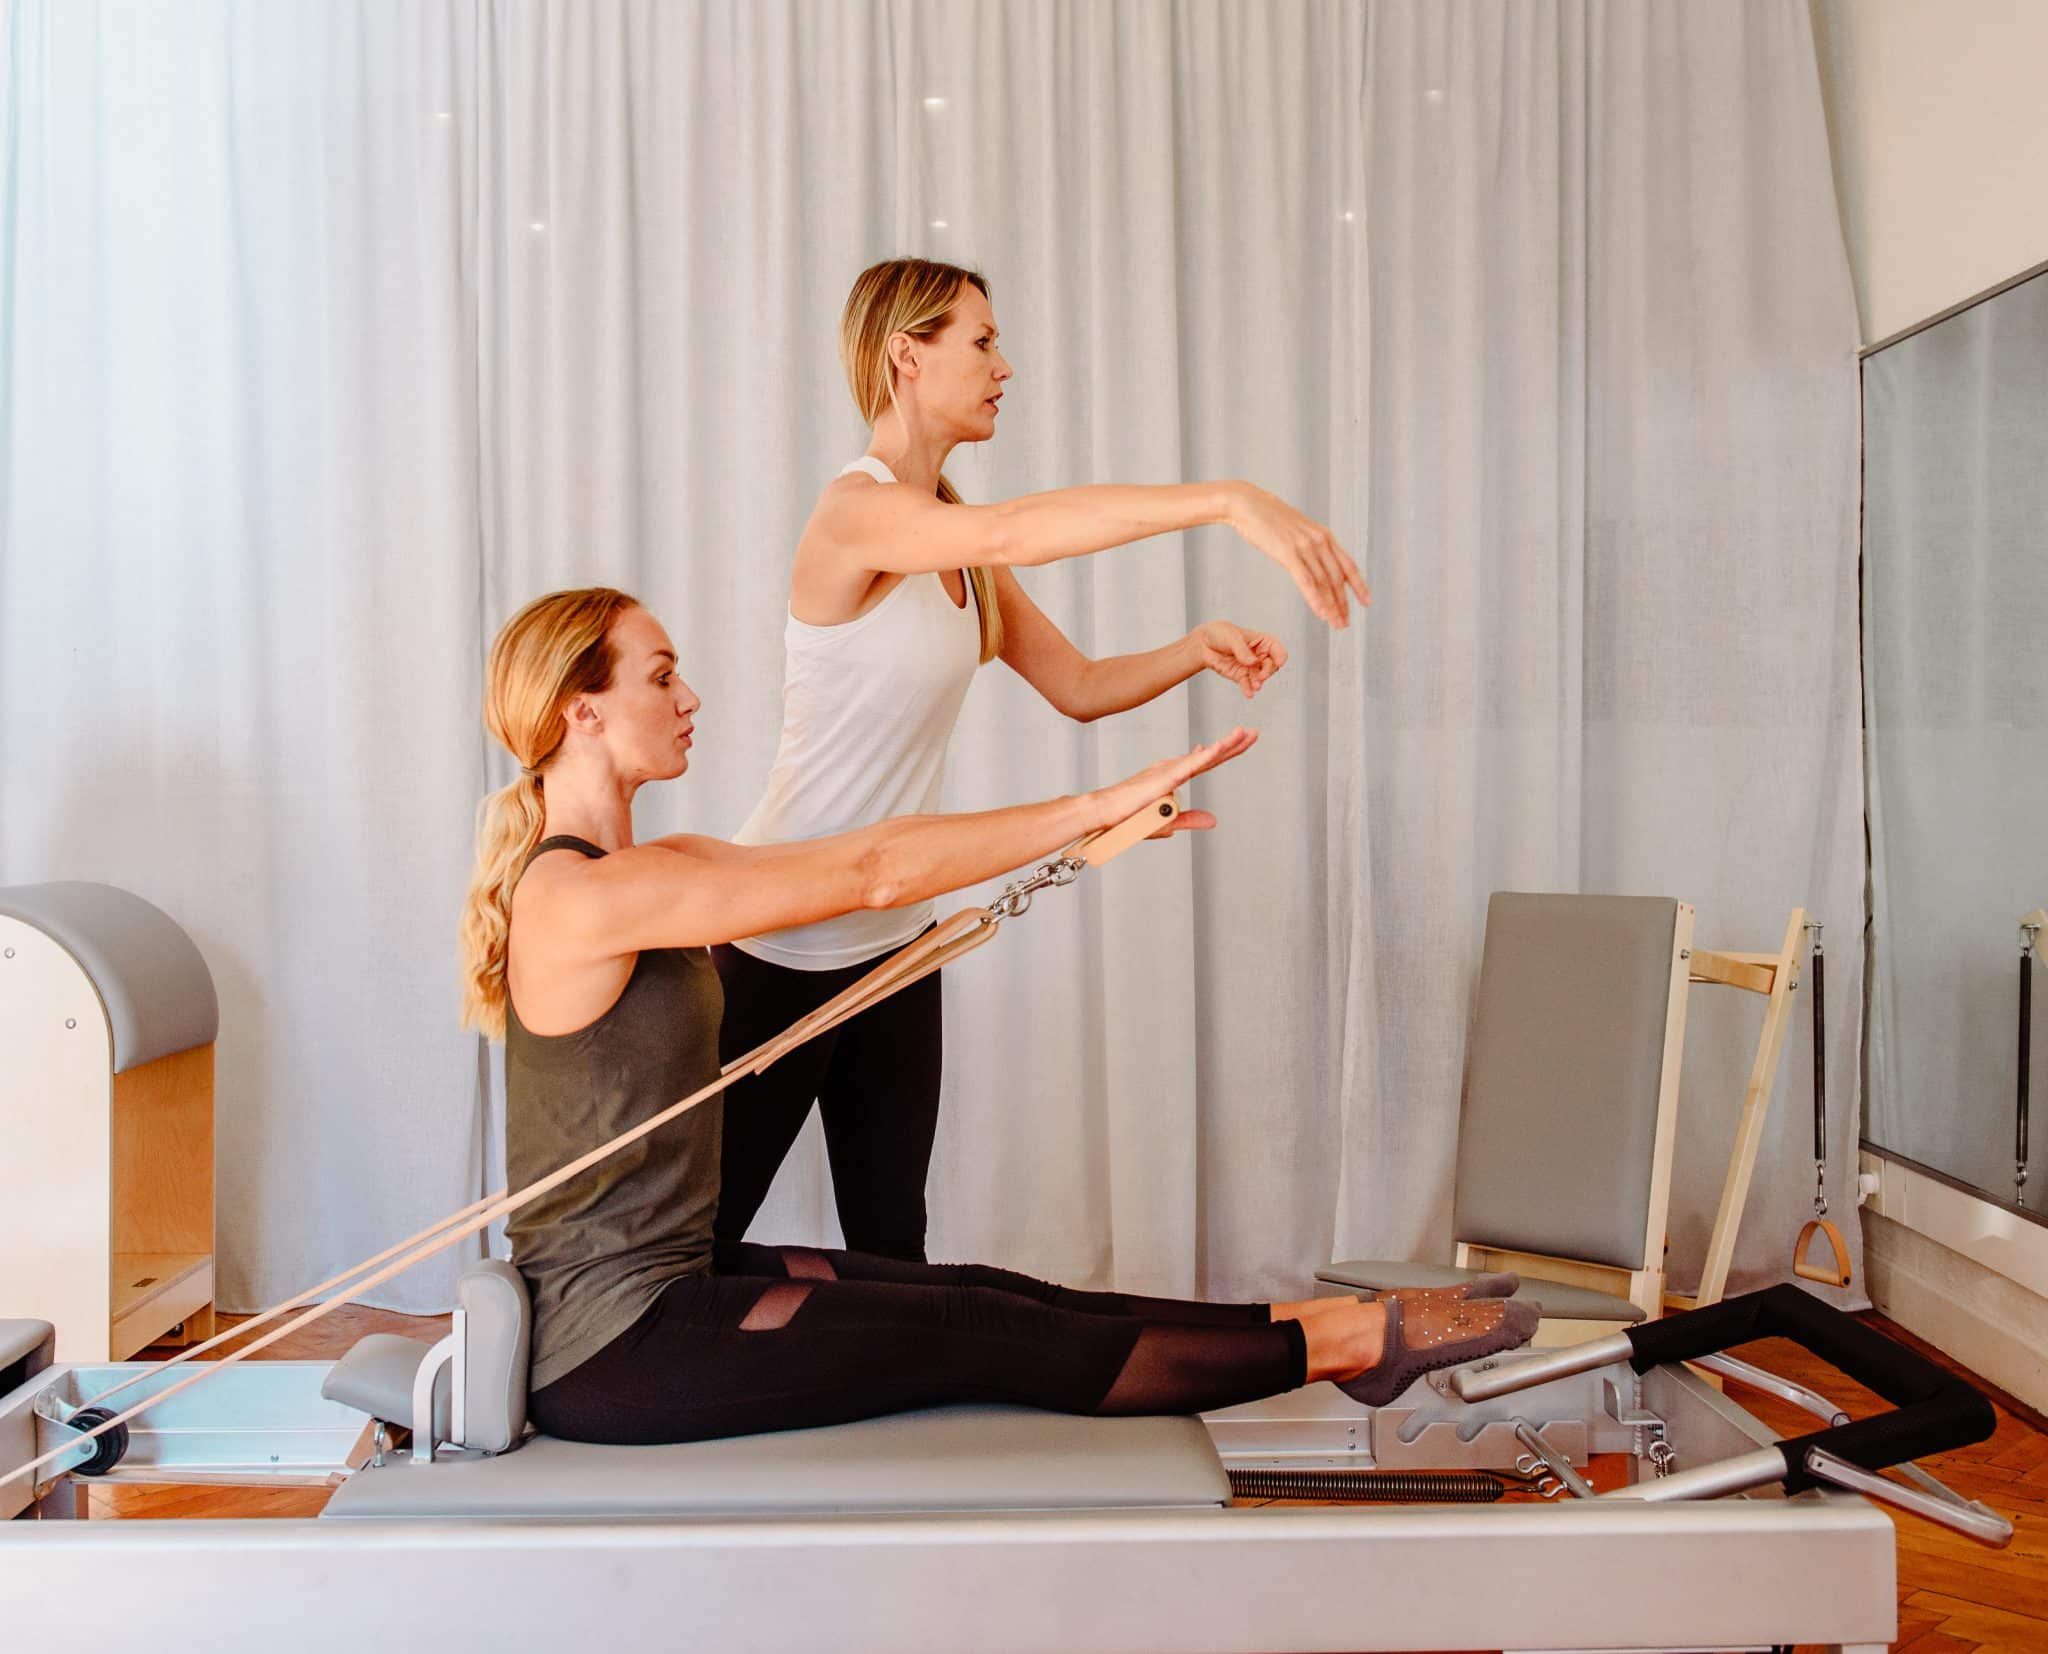 cours particulier de pilates classique sur reformer avec Jenny Backlund-Jenkins chez Future Form Nice